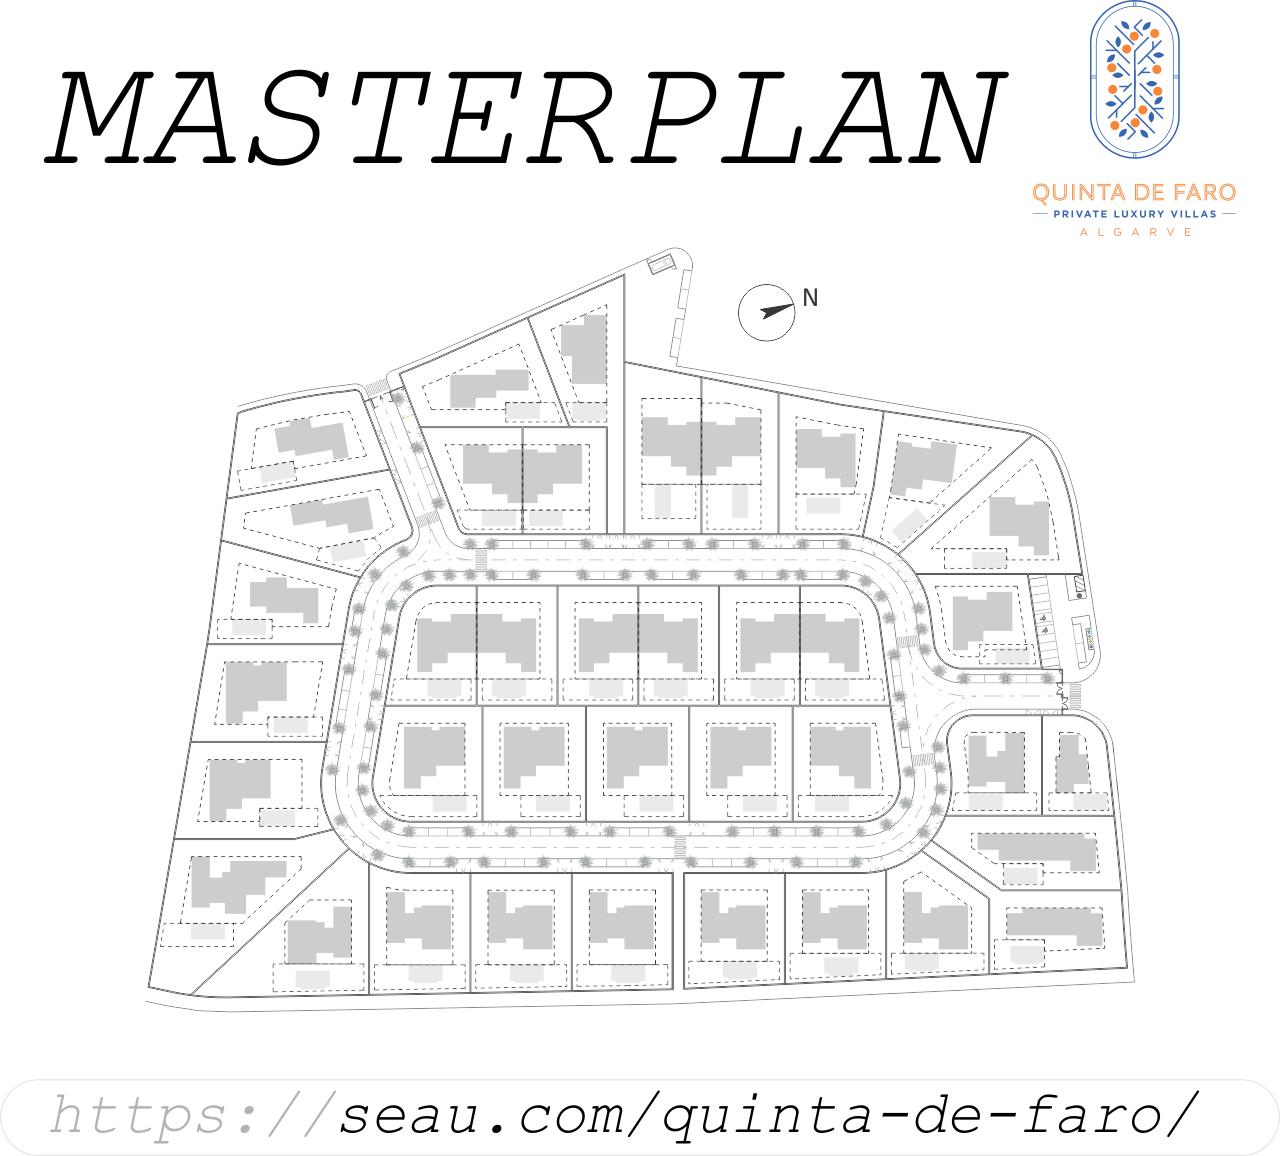 Masterplan Quinta de Faro. Para ver más sobre las áreas de los distintos lotes y diferentes tipos de villas, haga clic aquí.